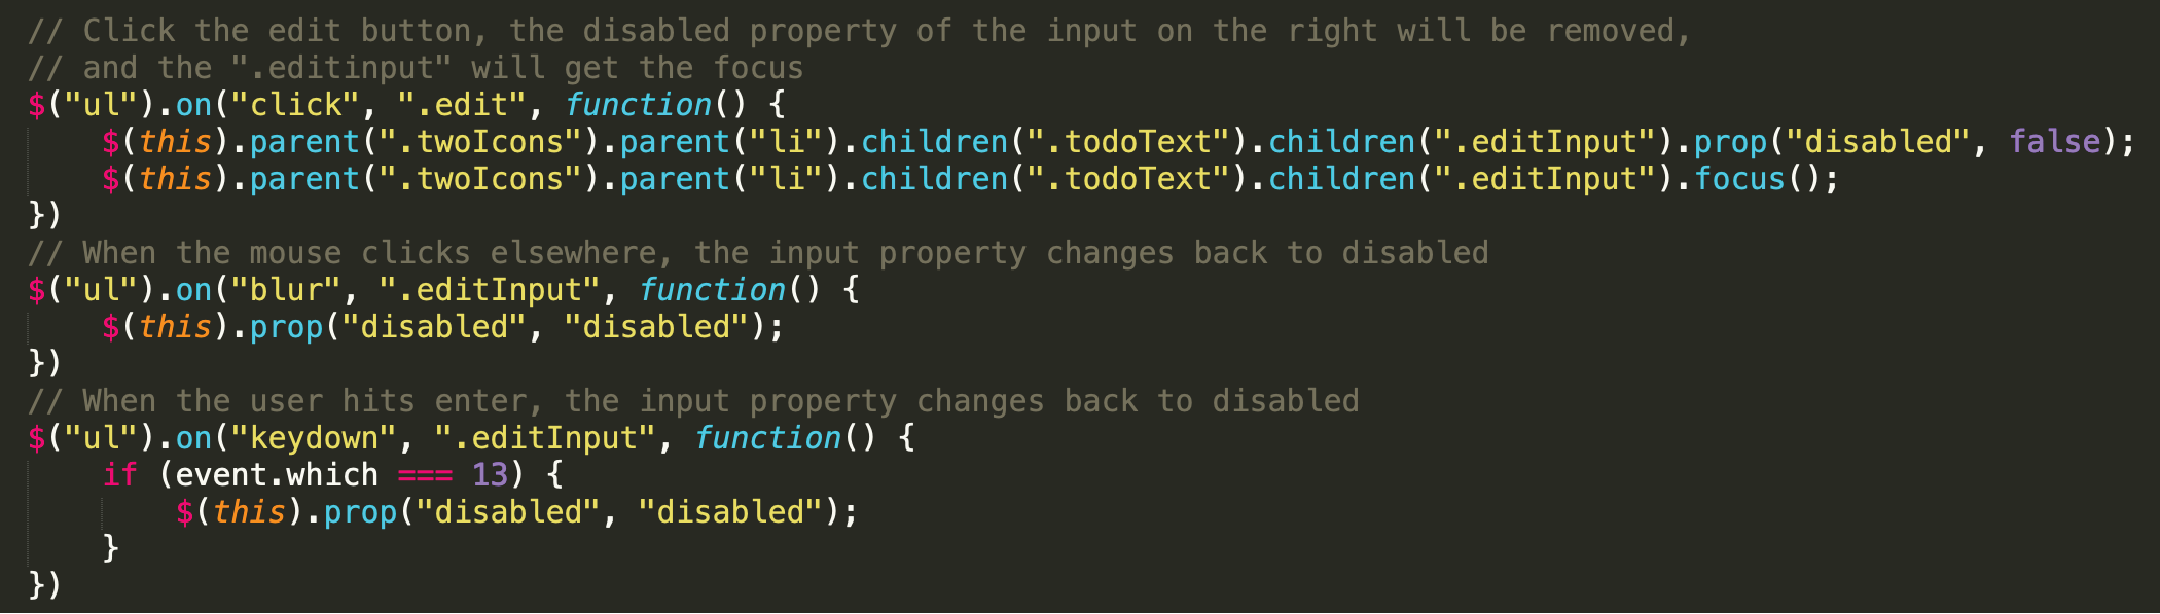 code of edit function